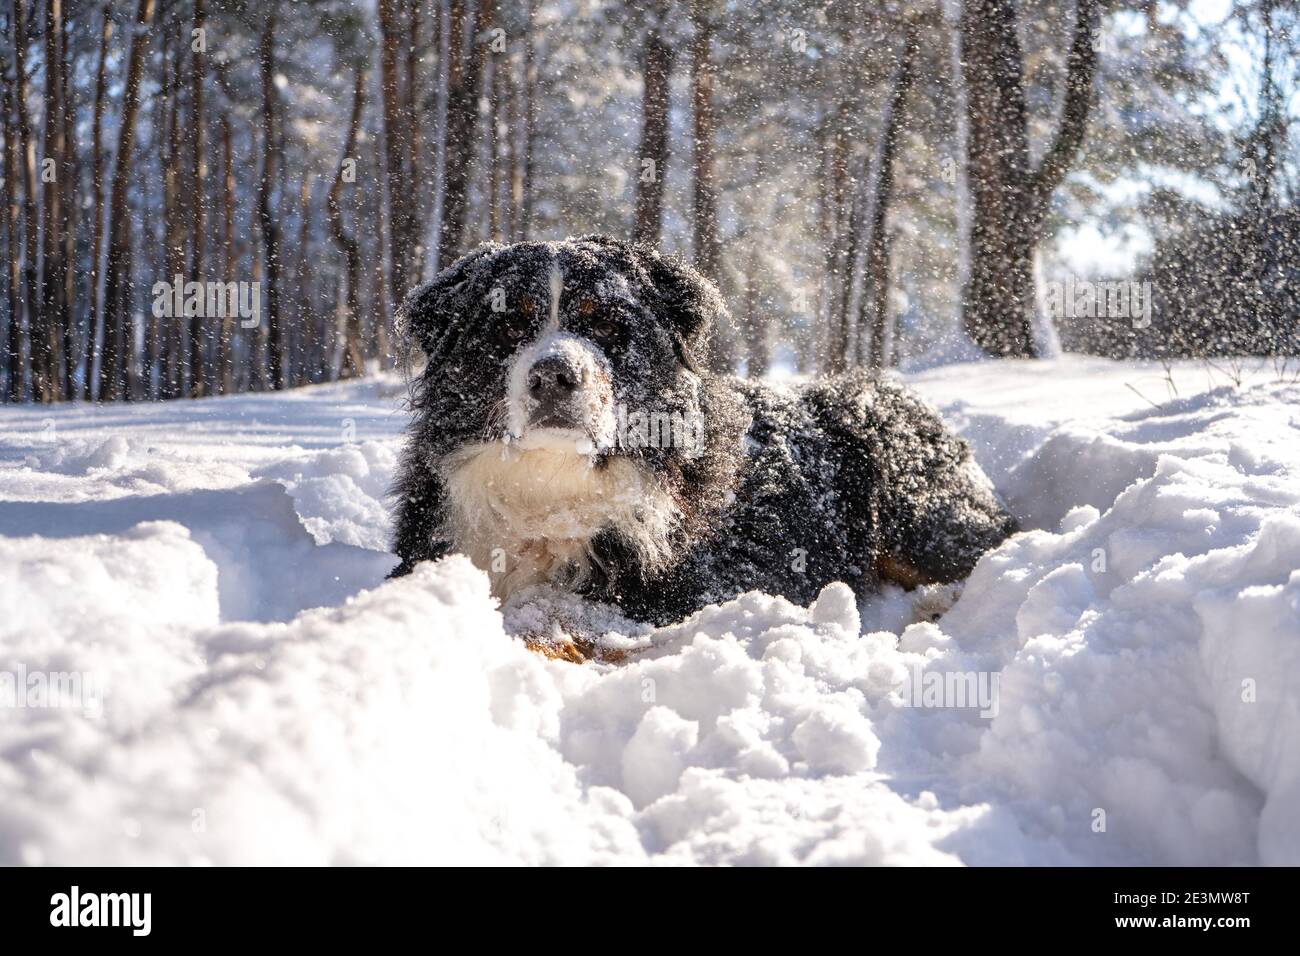 cane da montagna bernese coperto di neve che cammina attraverso le grandi nevicate. un sacco di neve sulle strade invernali Foto Stock